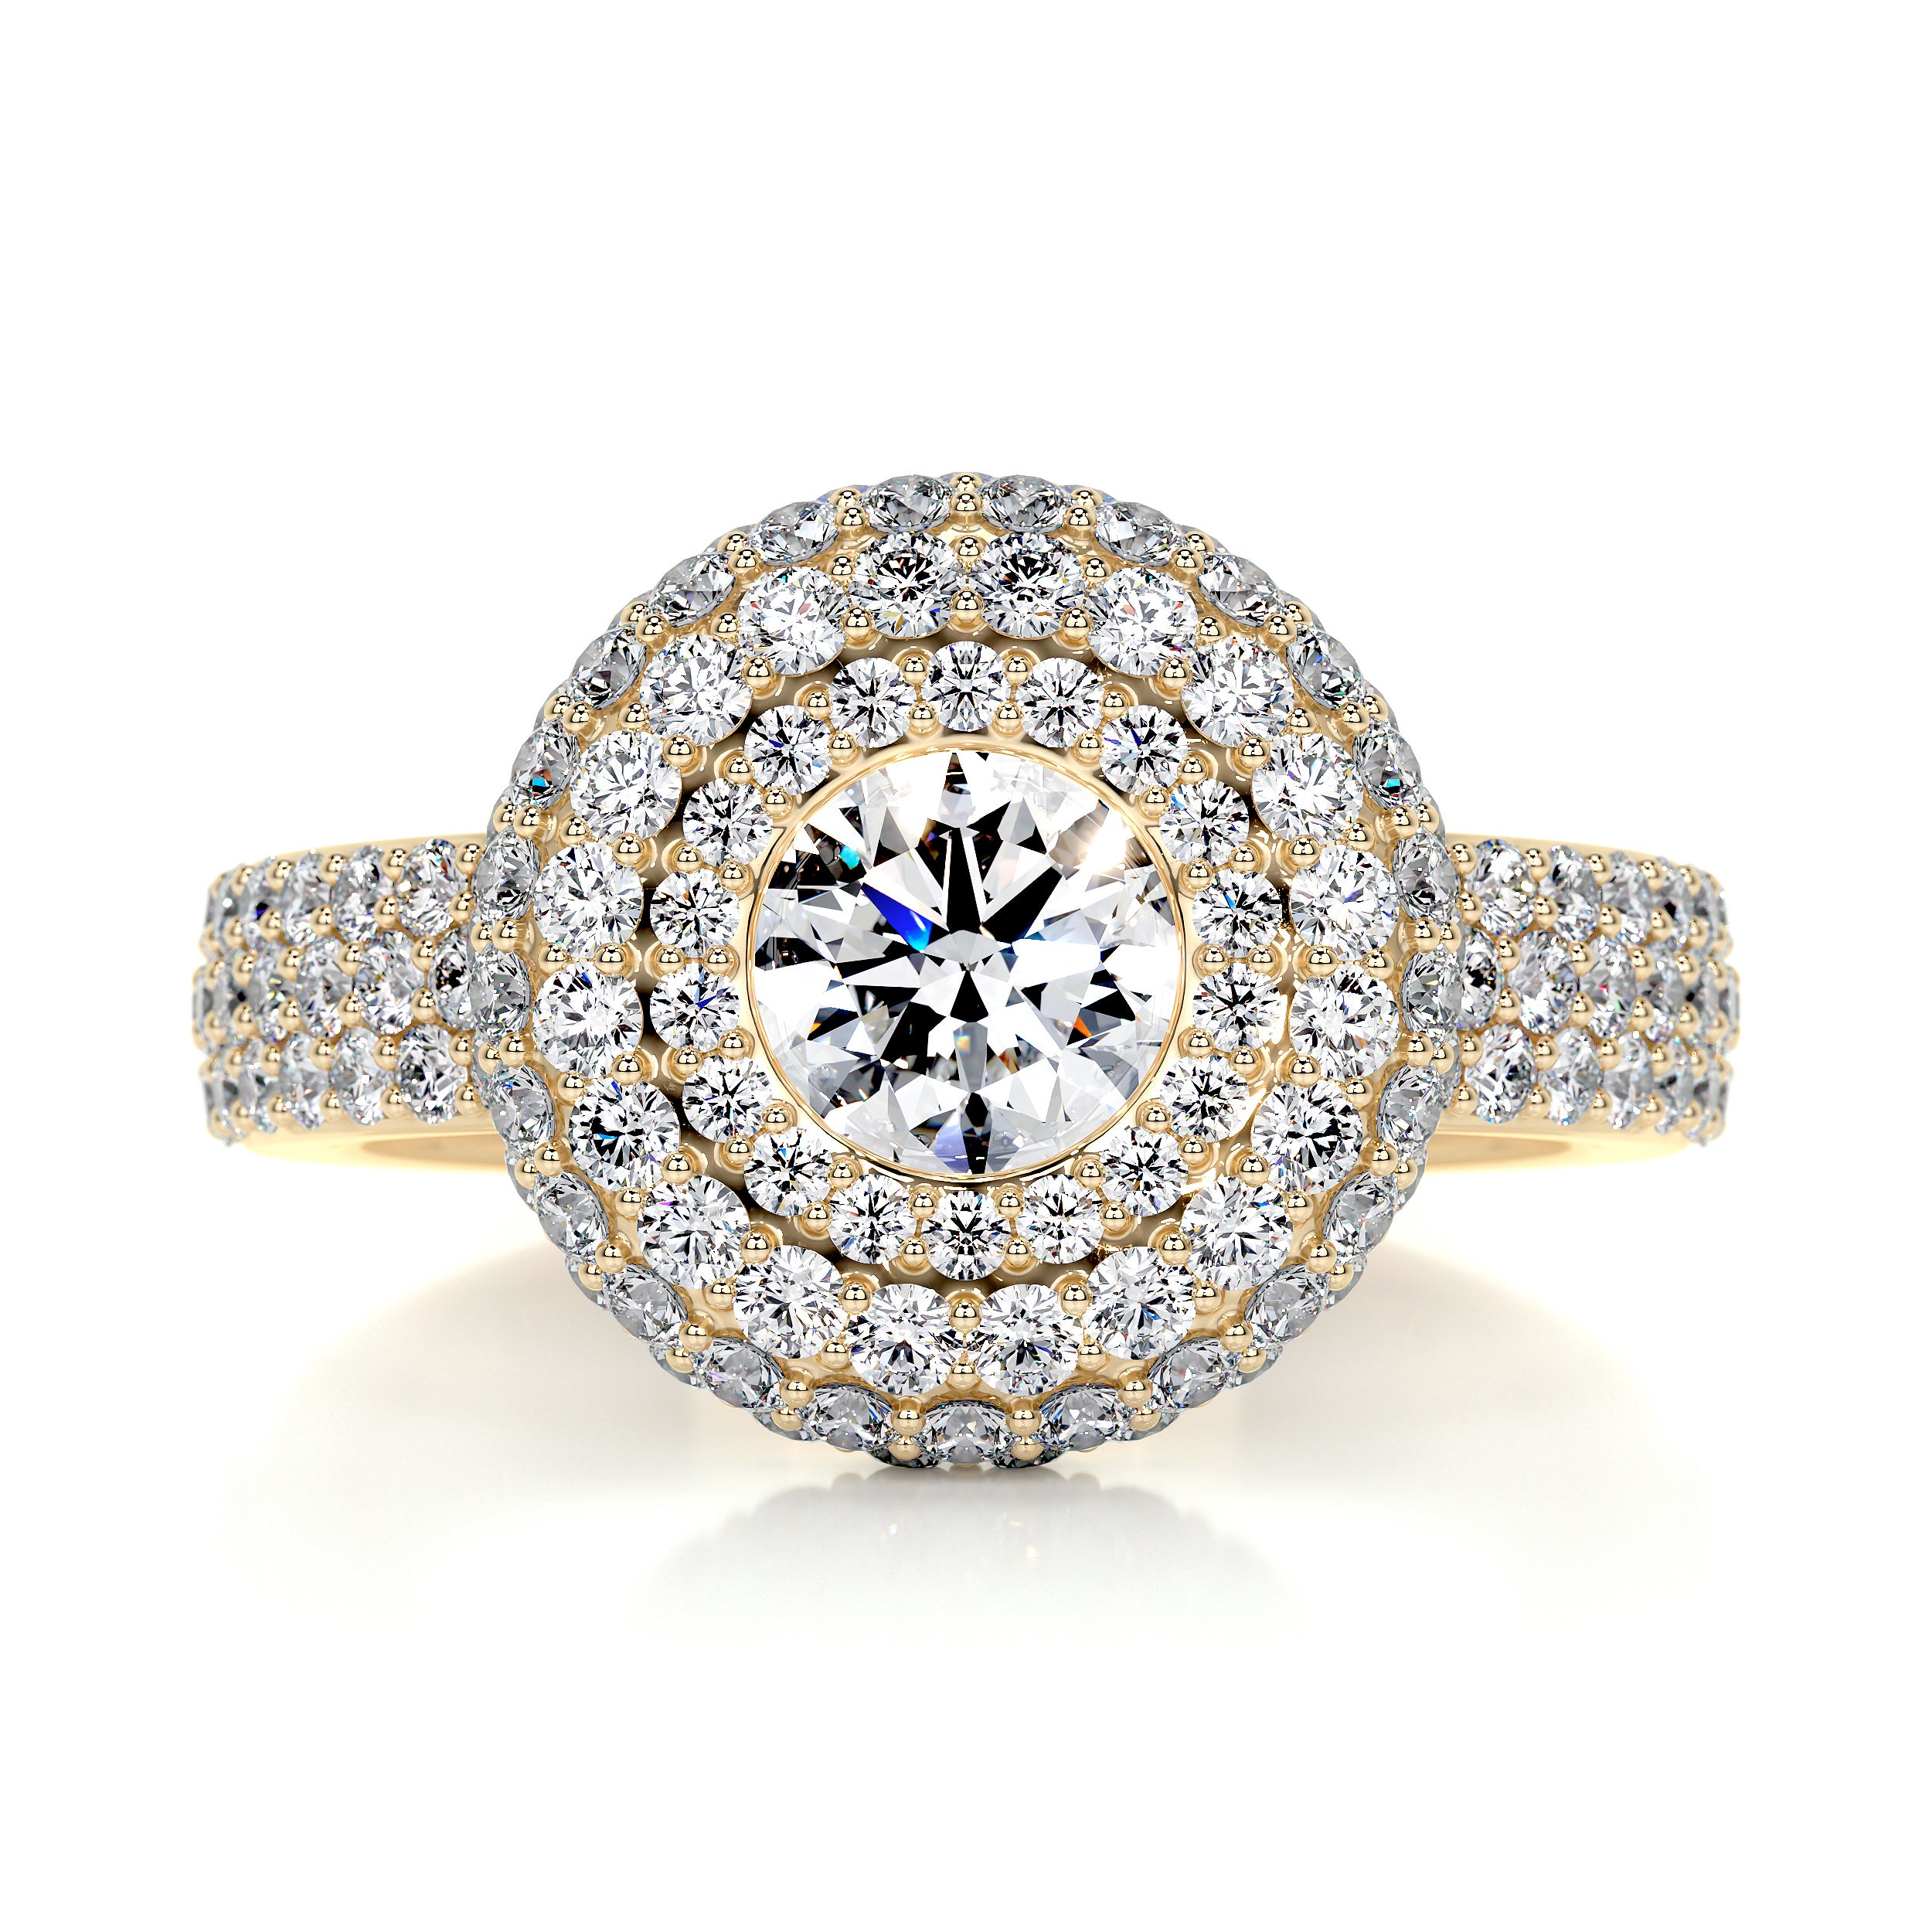 Reagan Diamond Engagement Ring -18K Yellow Gold